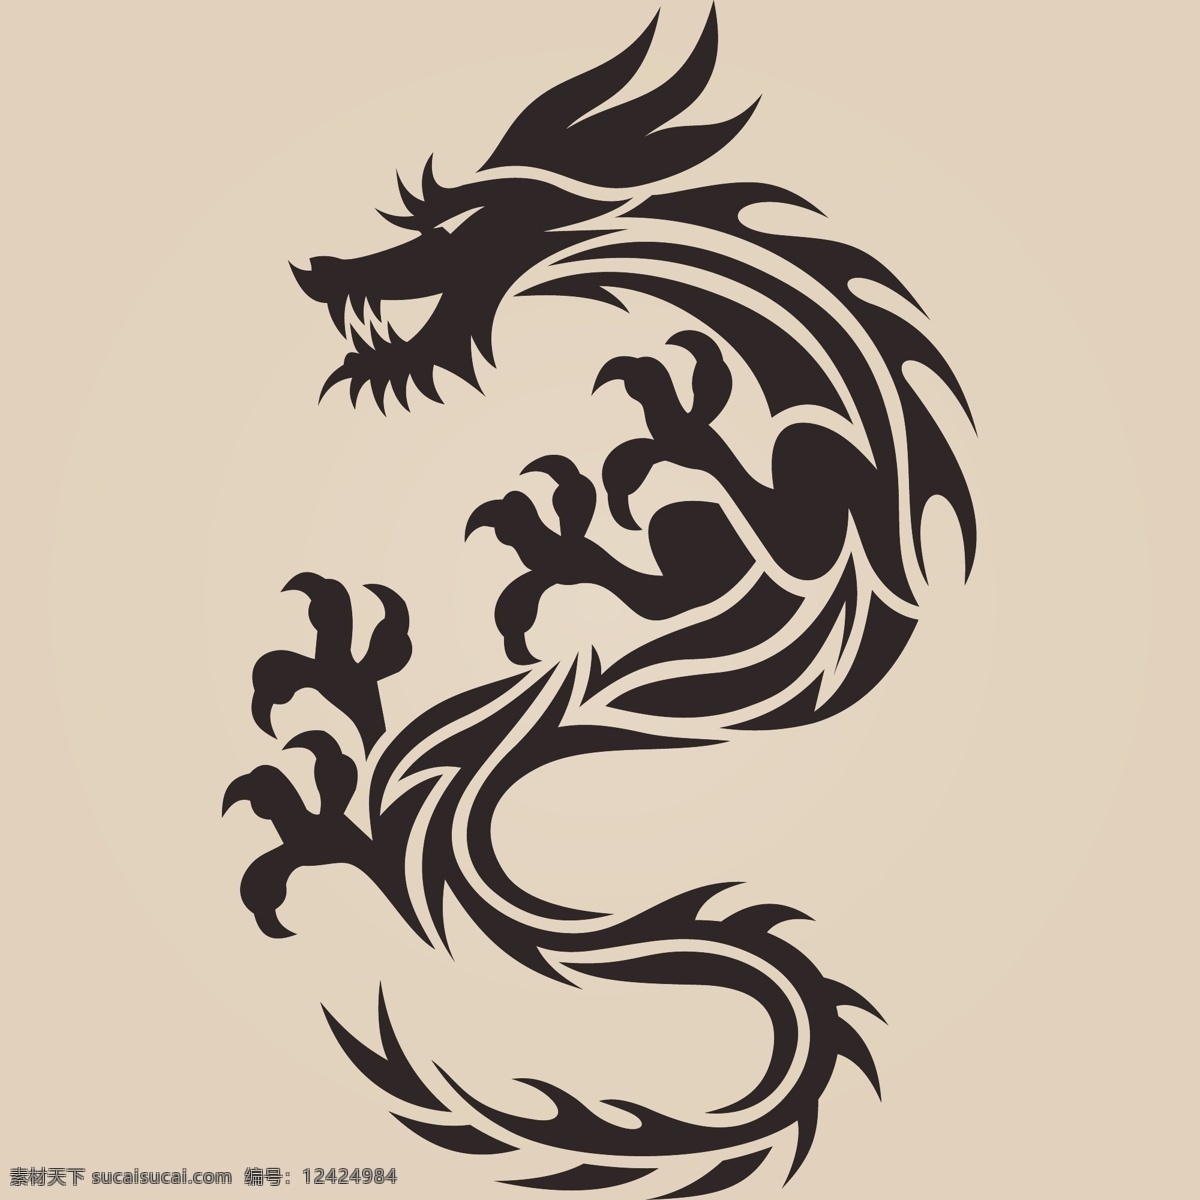 中国龙神龙 矢量素材 中国龙 神龙 纹身 矢量 龙纹身 龙矢量素材 龙 五爪金龙 文化艺术 传统文化